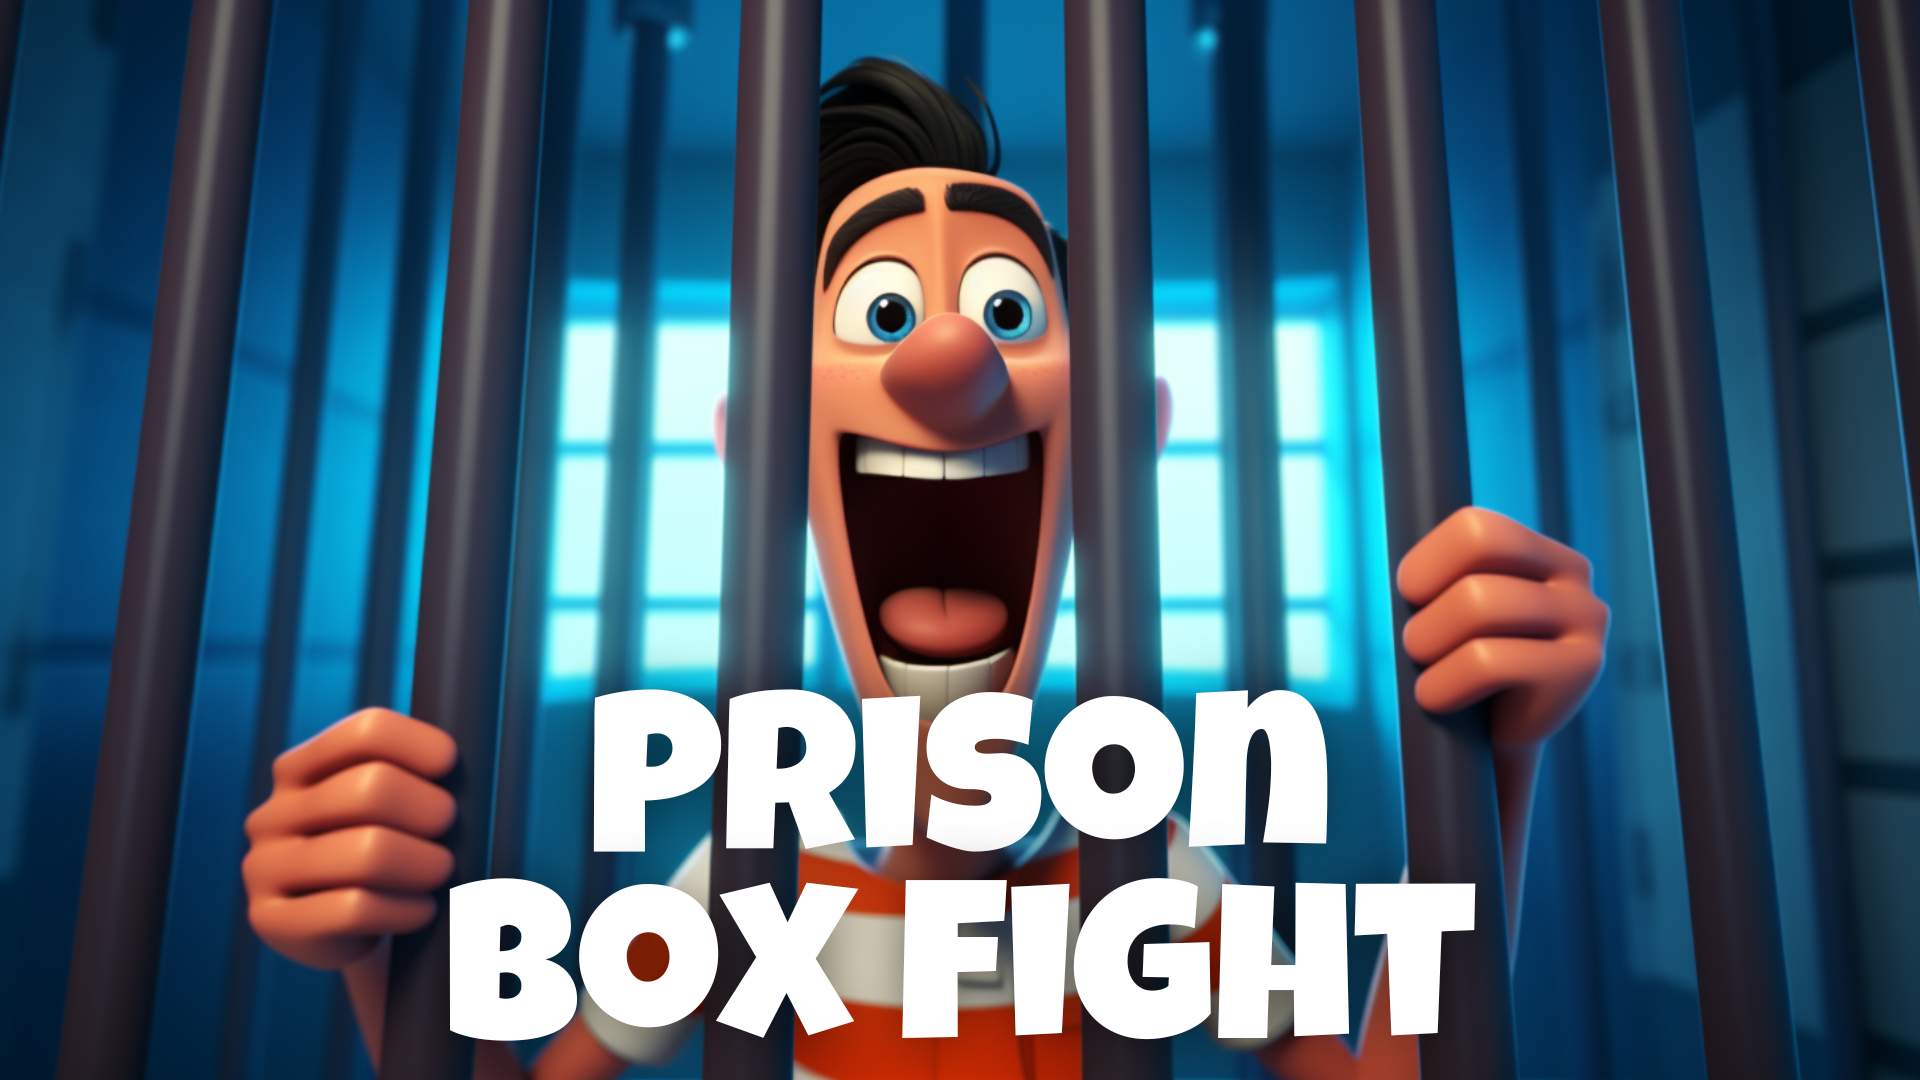 PRISON BOX FIGHT